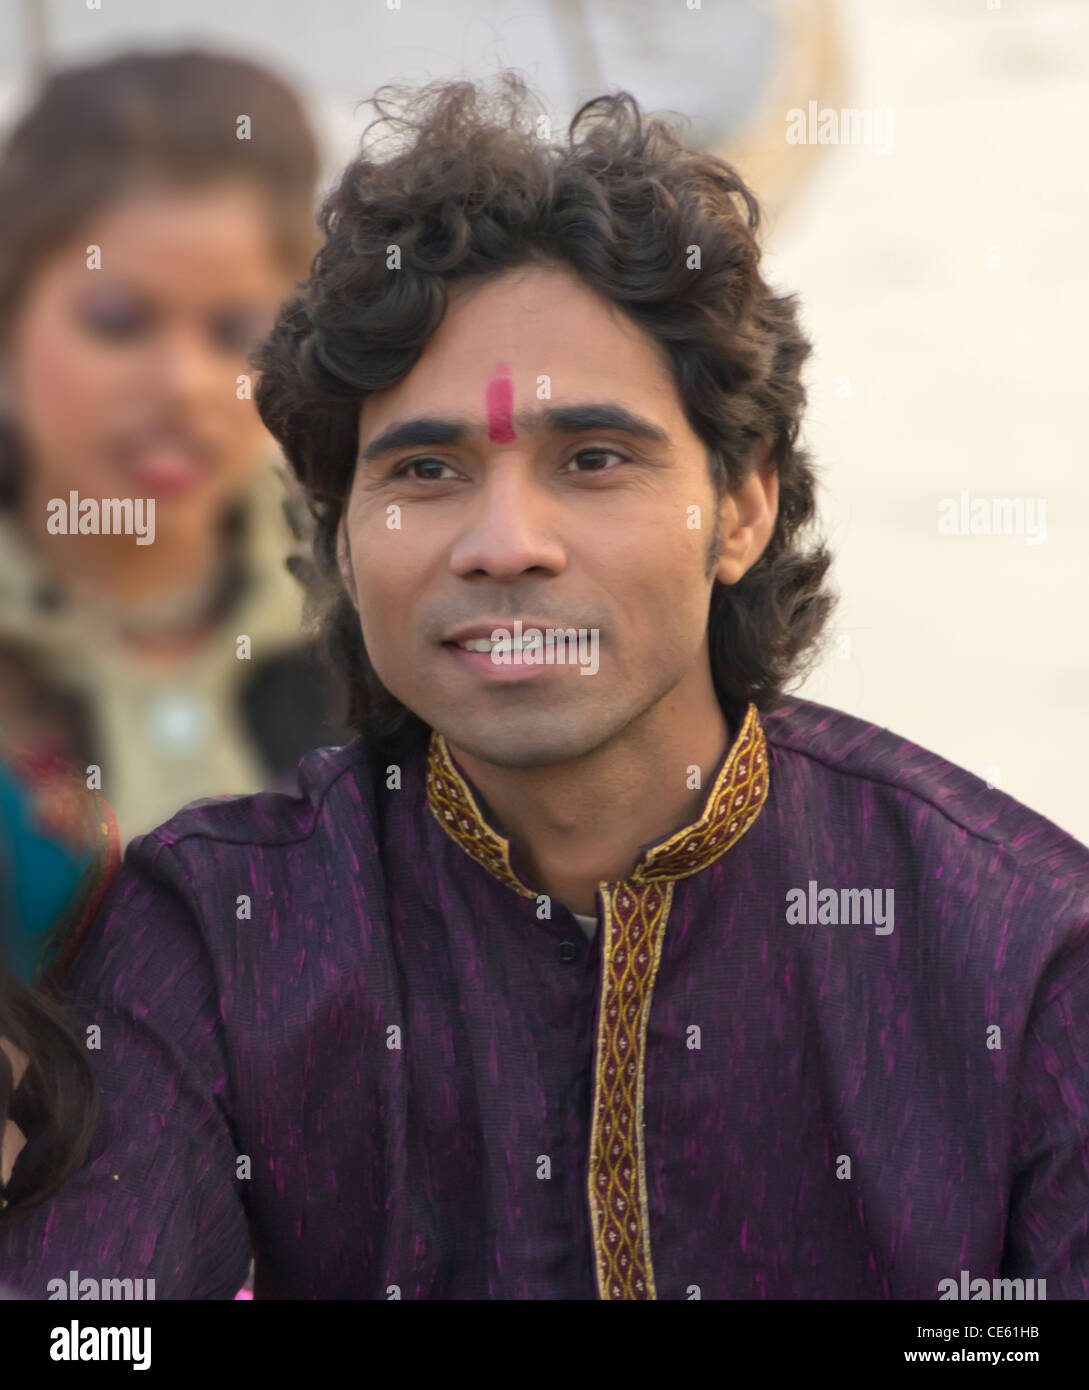 Un certain jeune homme souriant acteur indien régional avec tilak sur son front Banque D'Images